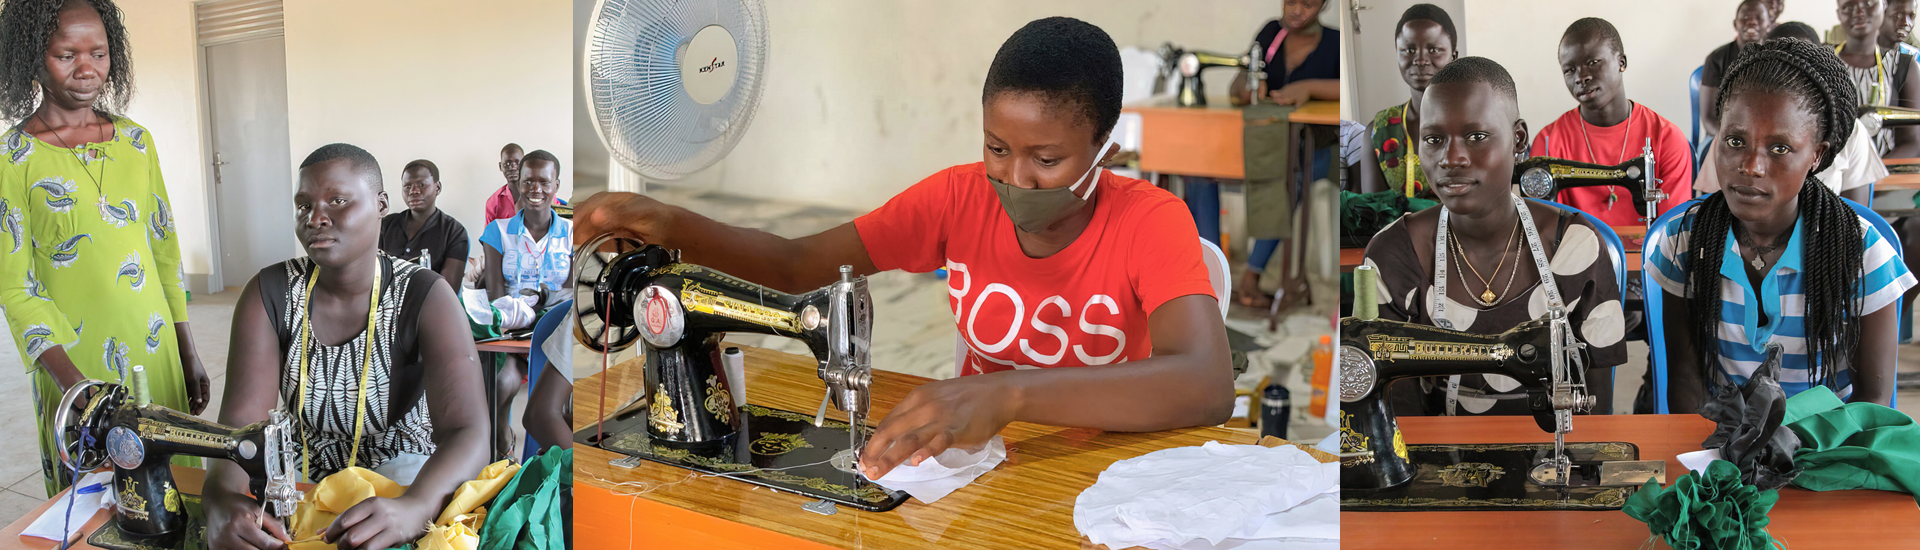 Formación y trabajo en el sector textil para menores y jóvenes en situación de vulnerabilidad en Nigeria